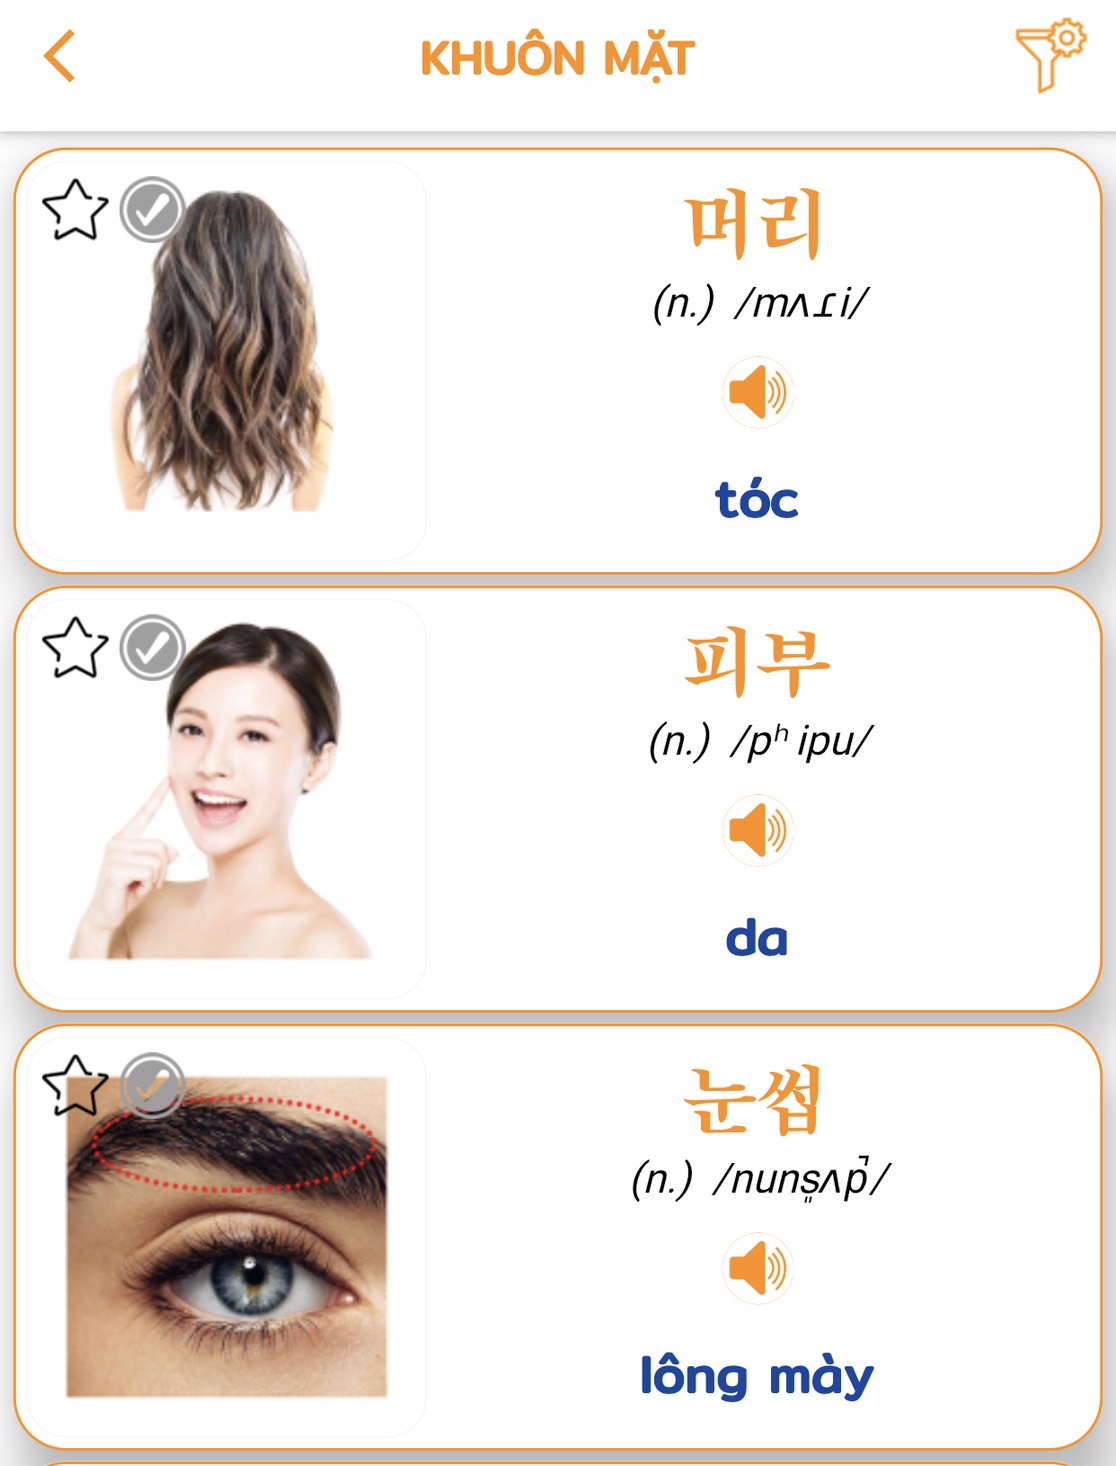 Nguồn: App học từ vựng tiếng Hàn PORO